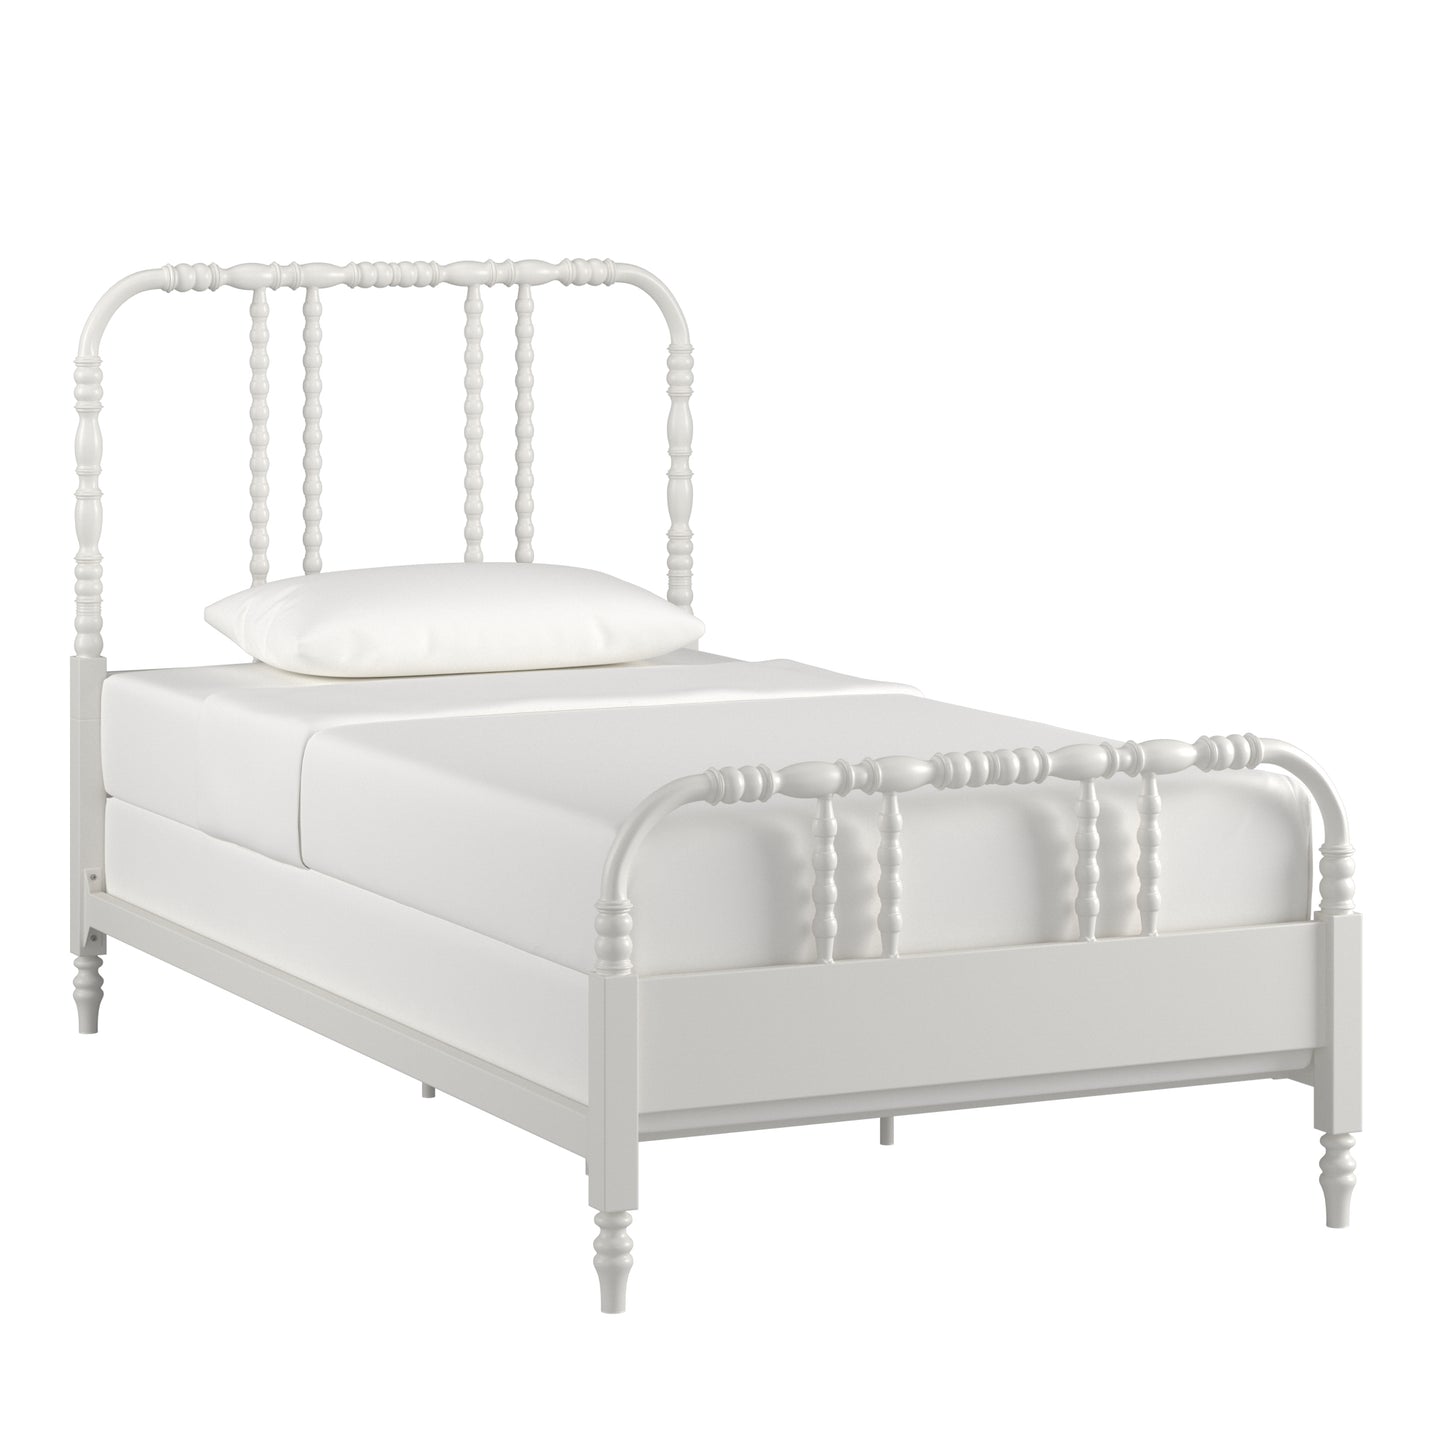 Metal Spool Bed - White, Twin (Twin Size)